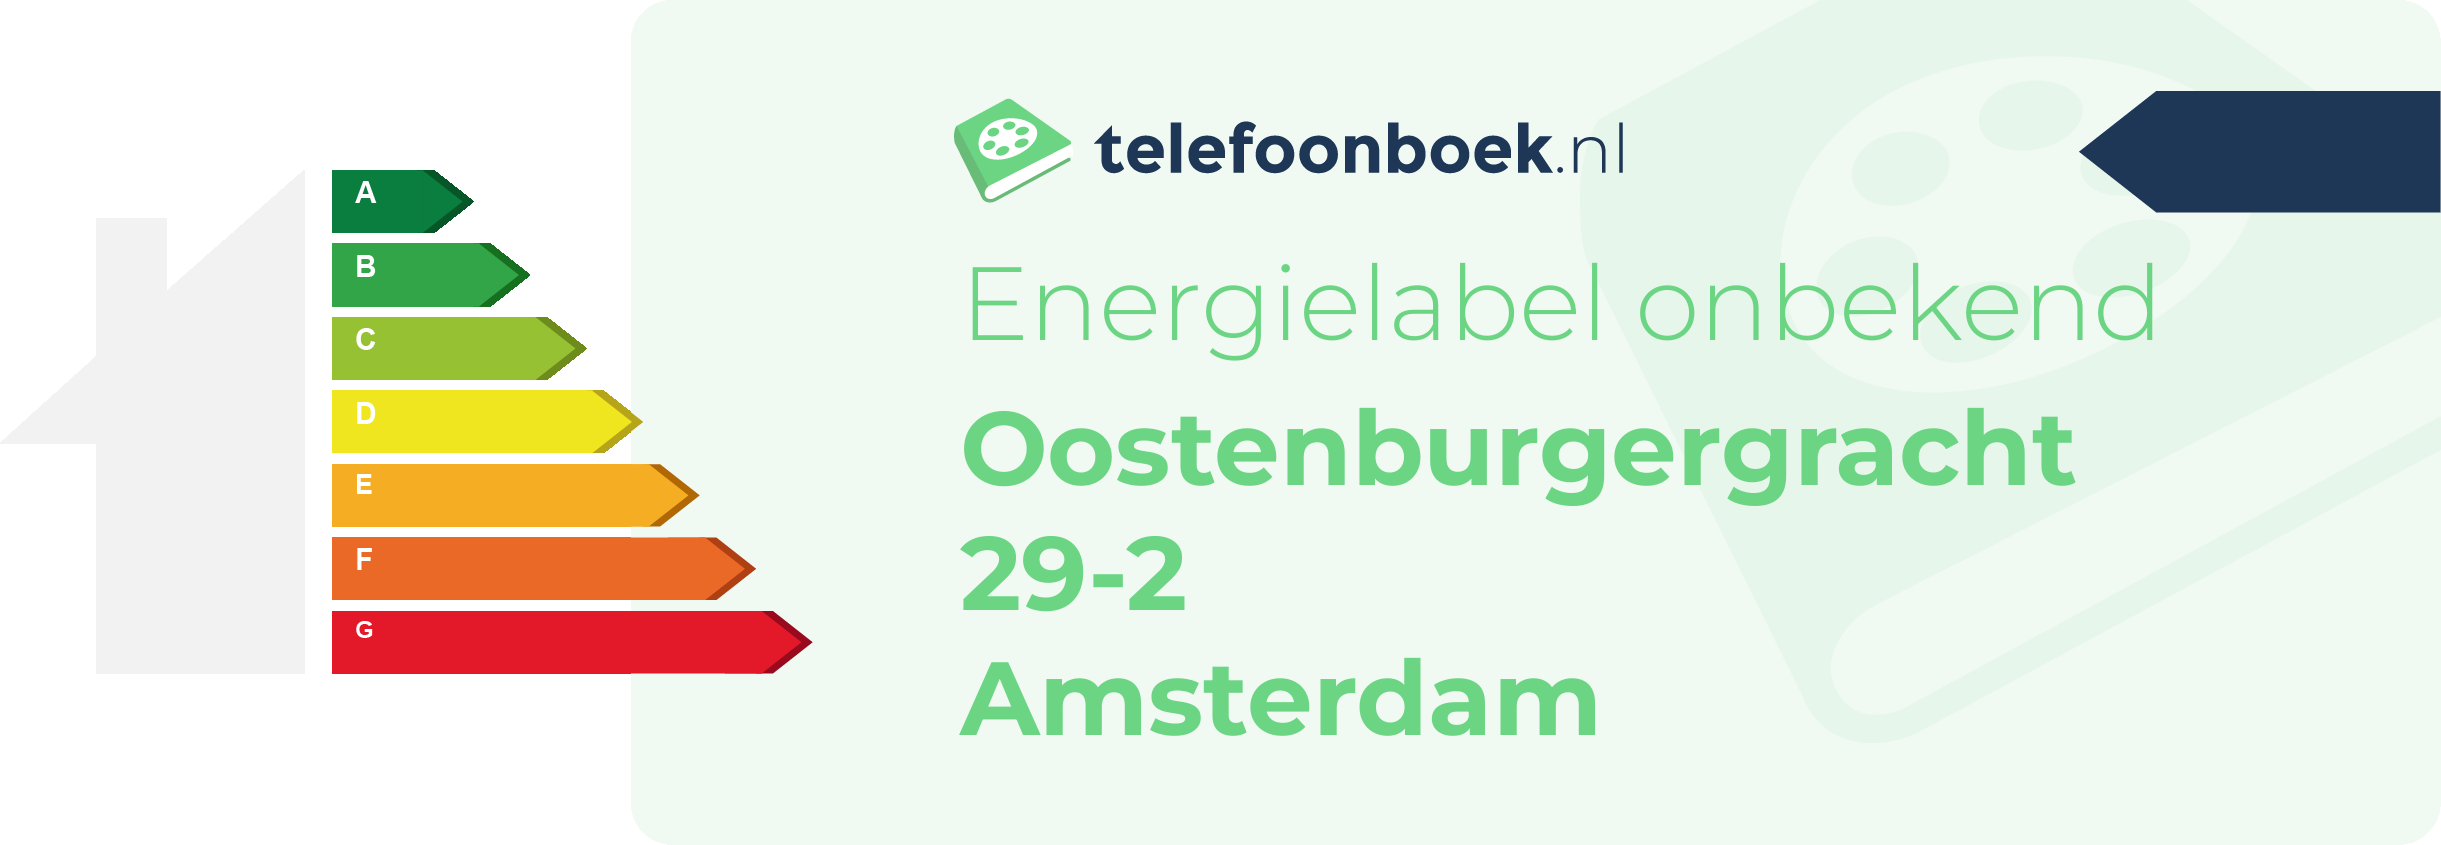 Energielabel Oostenburgergracht 29-2 Amsterdam